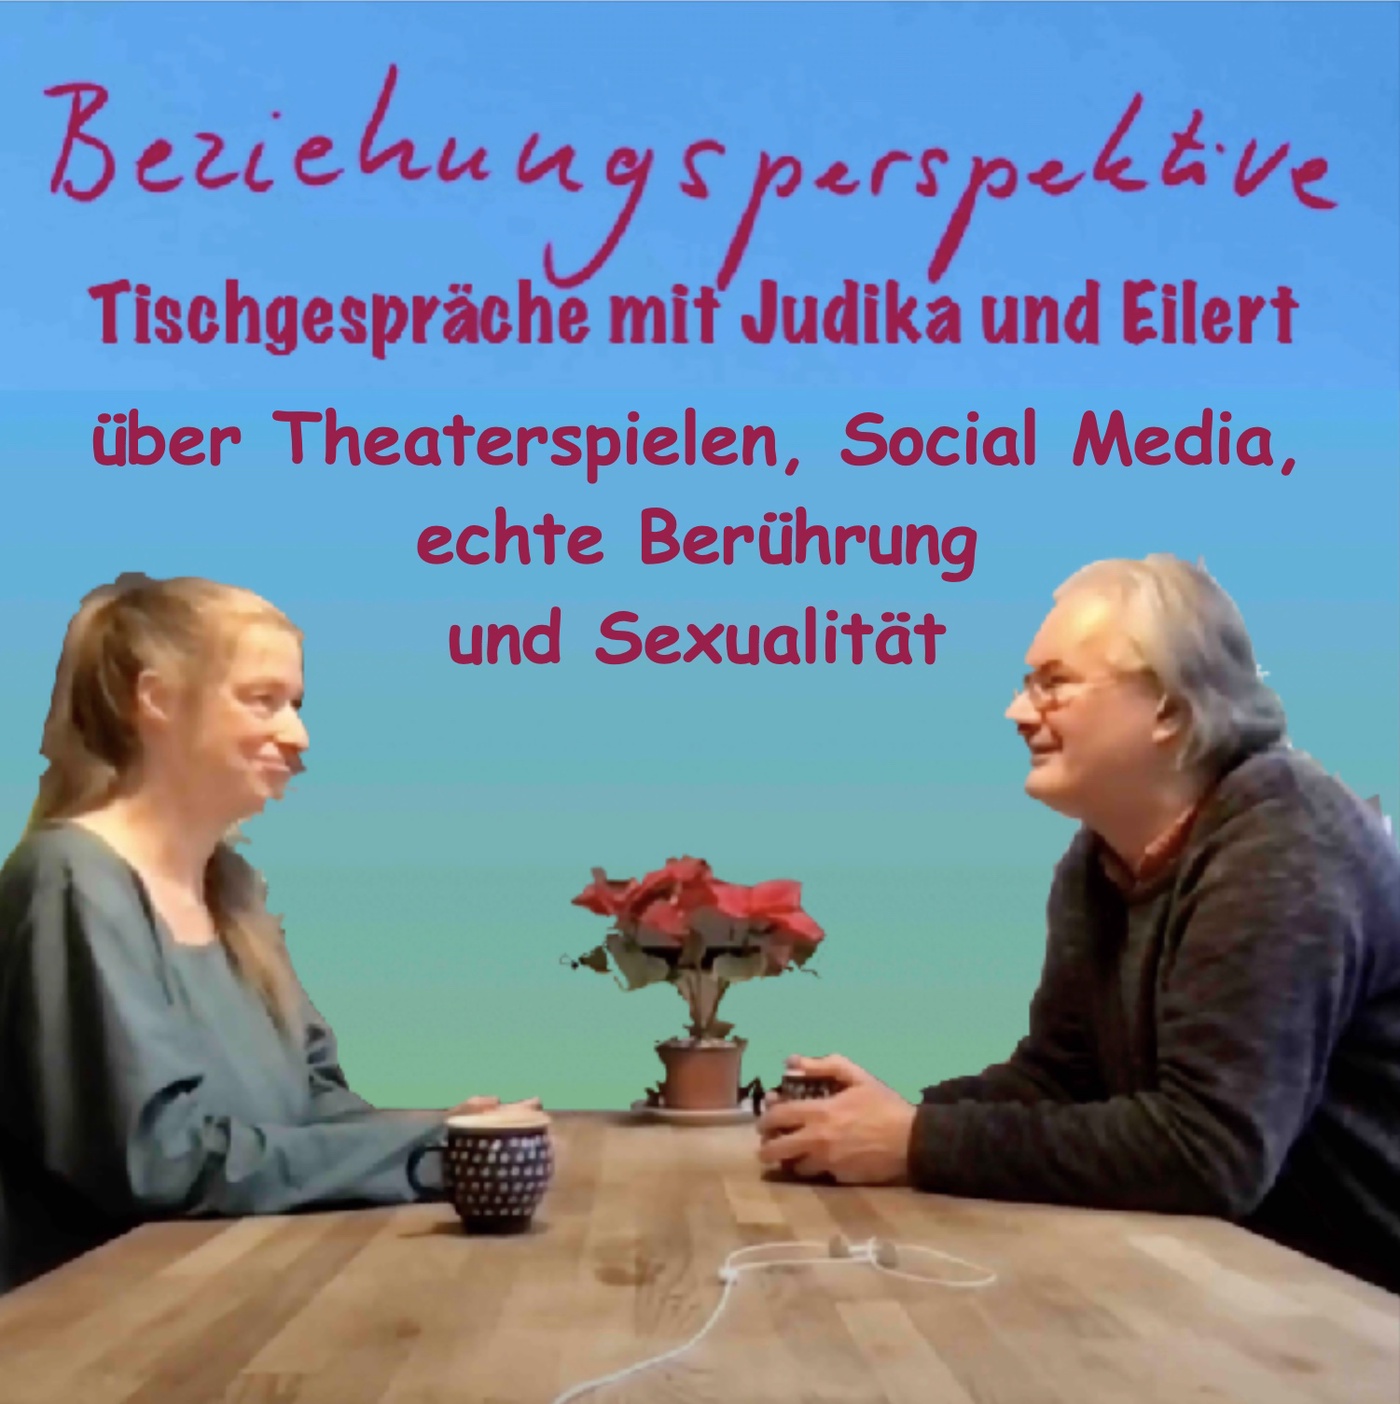 Über Theaterspielen, Social Media und Sexualität